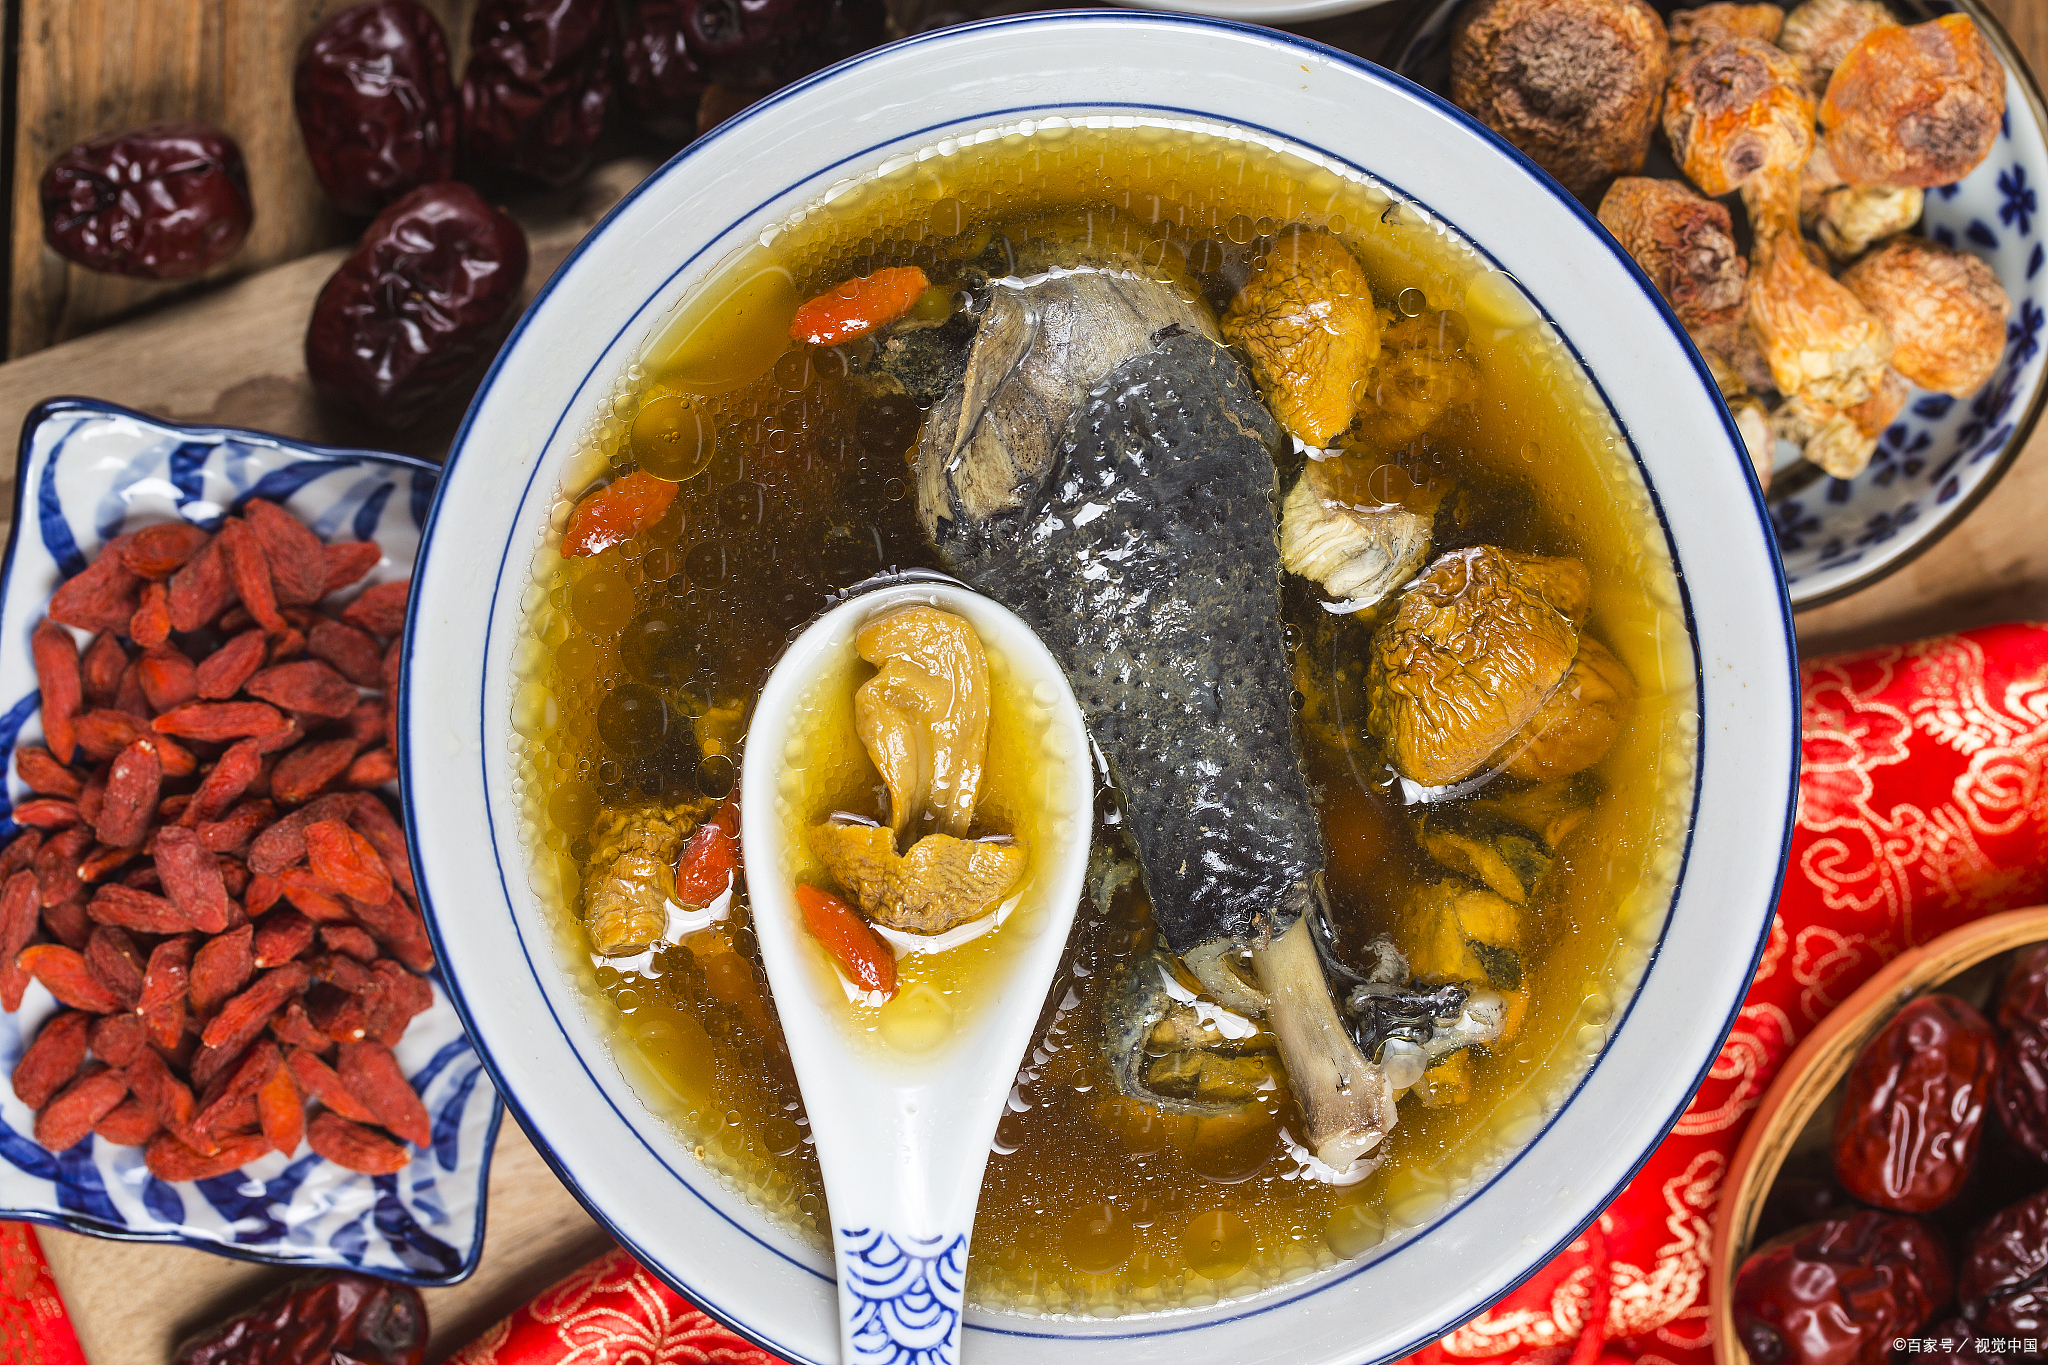 【一,引言】  乌鸡汤是一道营养丰富的传统汤品,不仅口感鲜美,而且